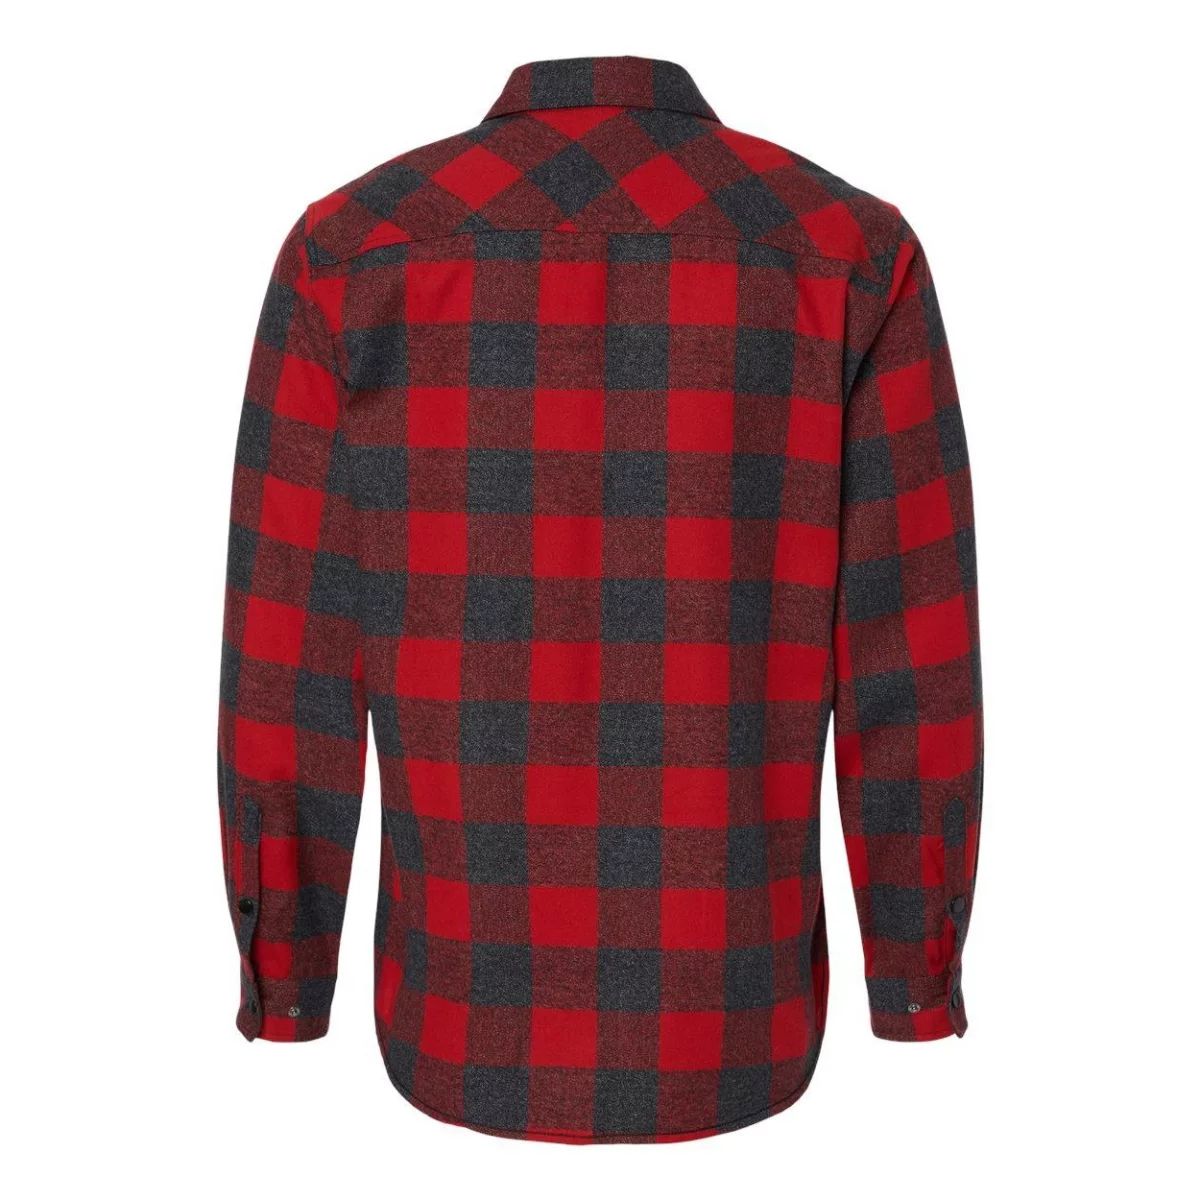 Фланелевая рубашка в клетку с длинными рукавами и защелками спереди Burnside банкетка red and black ceres